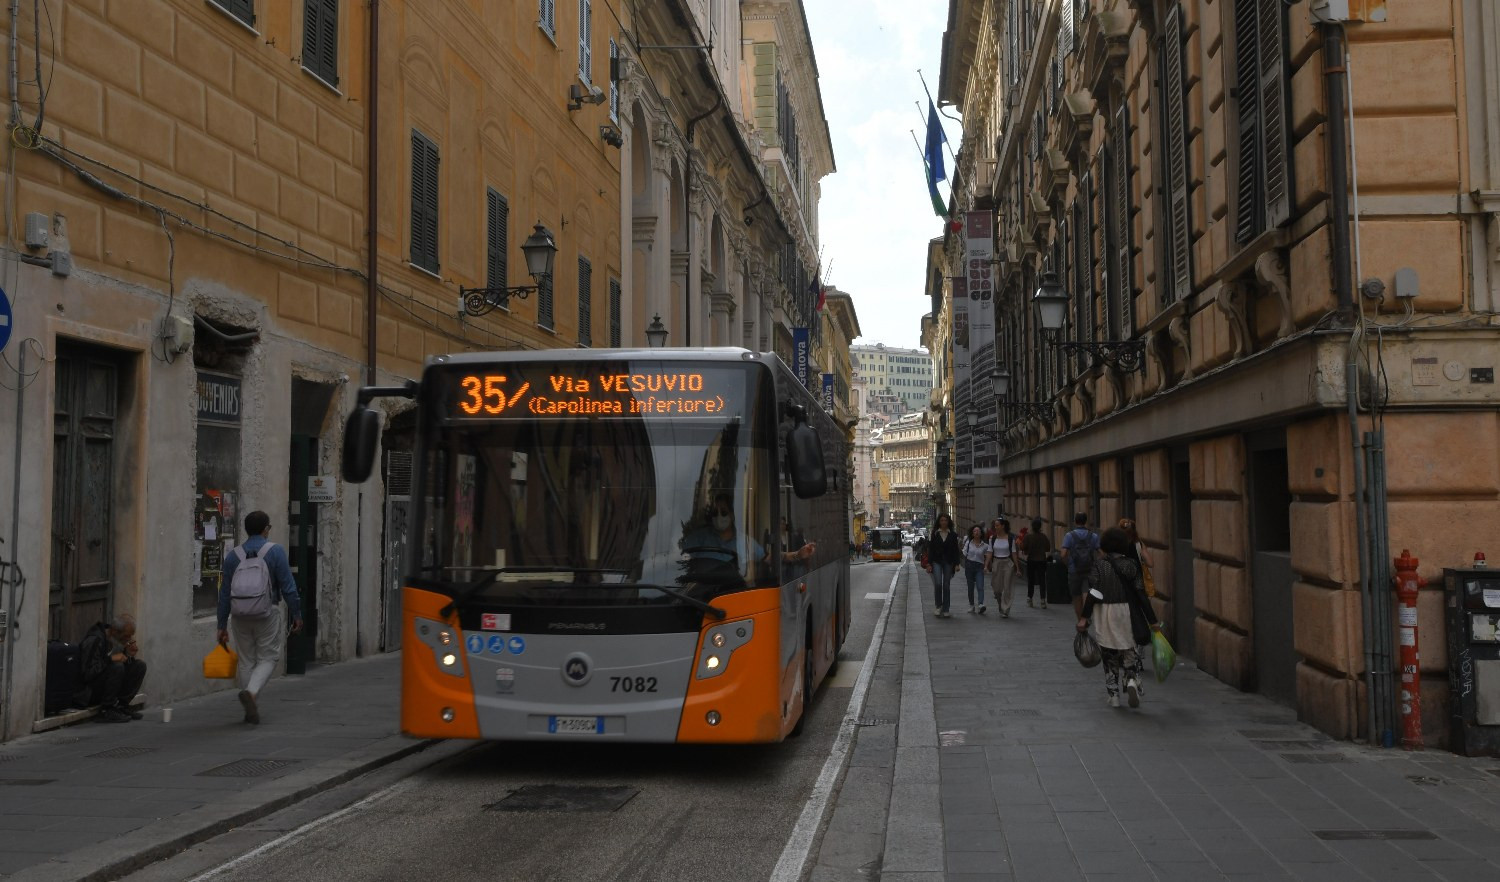 Trasporto pubblico a Genova, da oggi mezzi gratis per over 70 e under 14